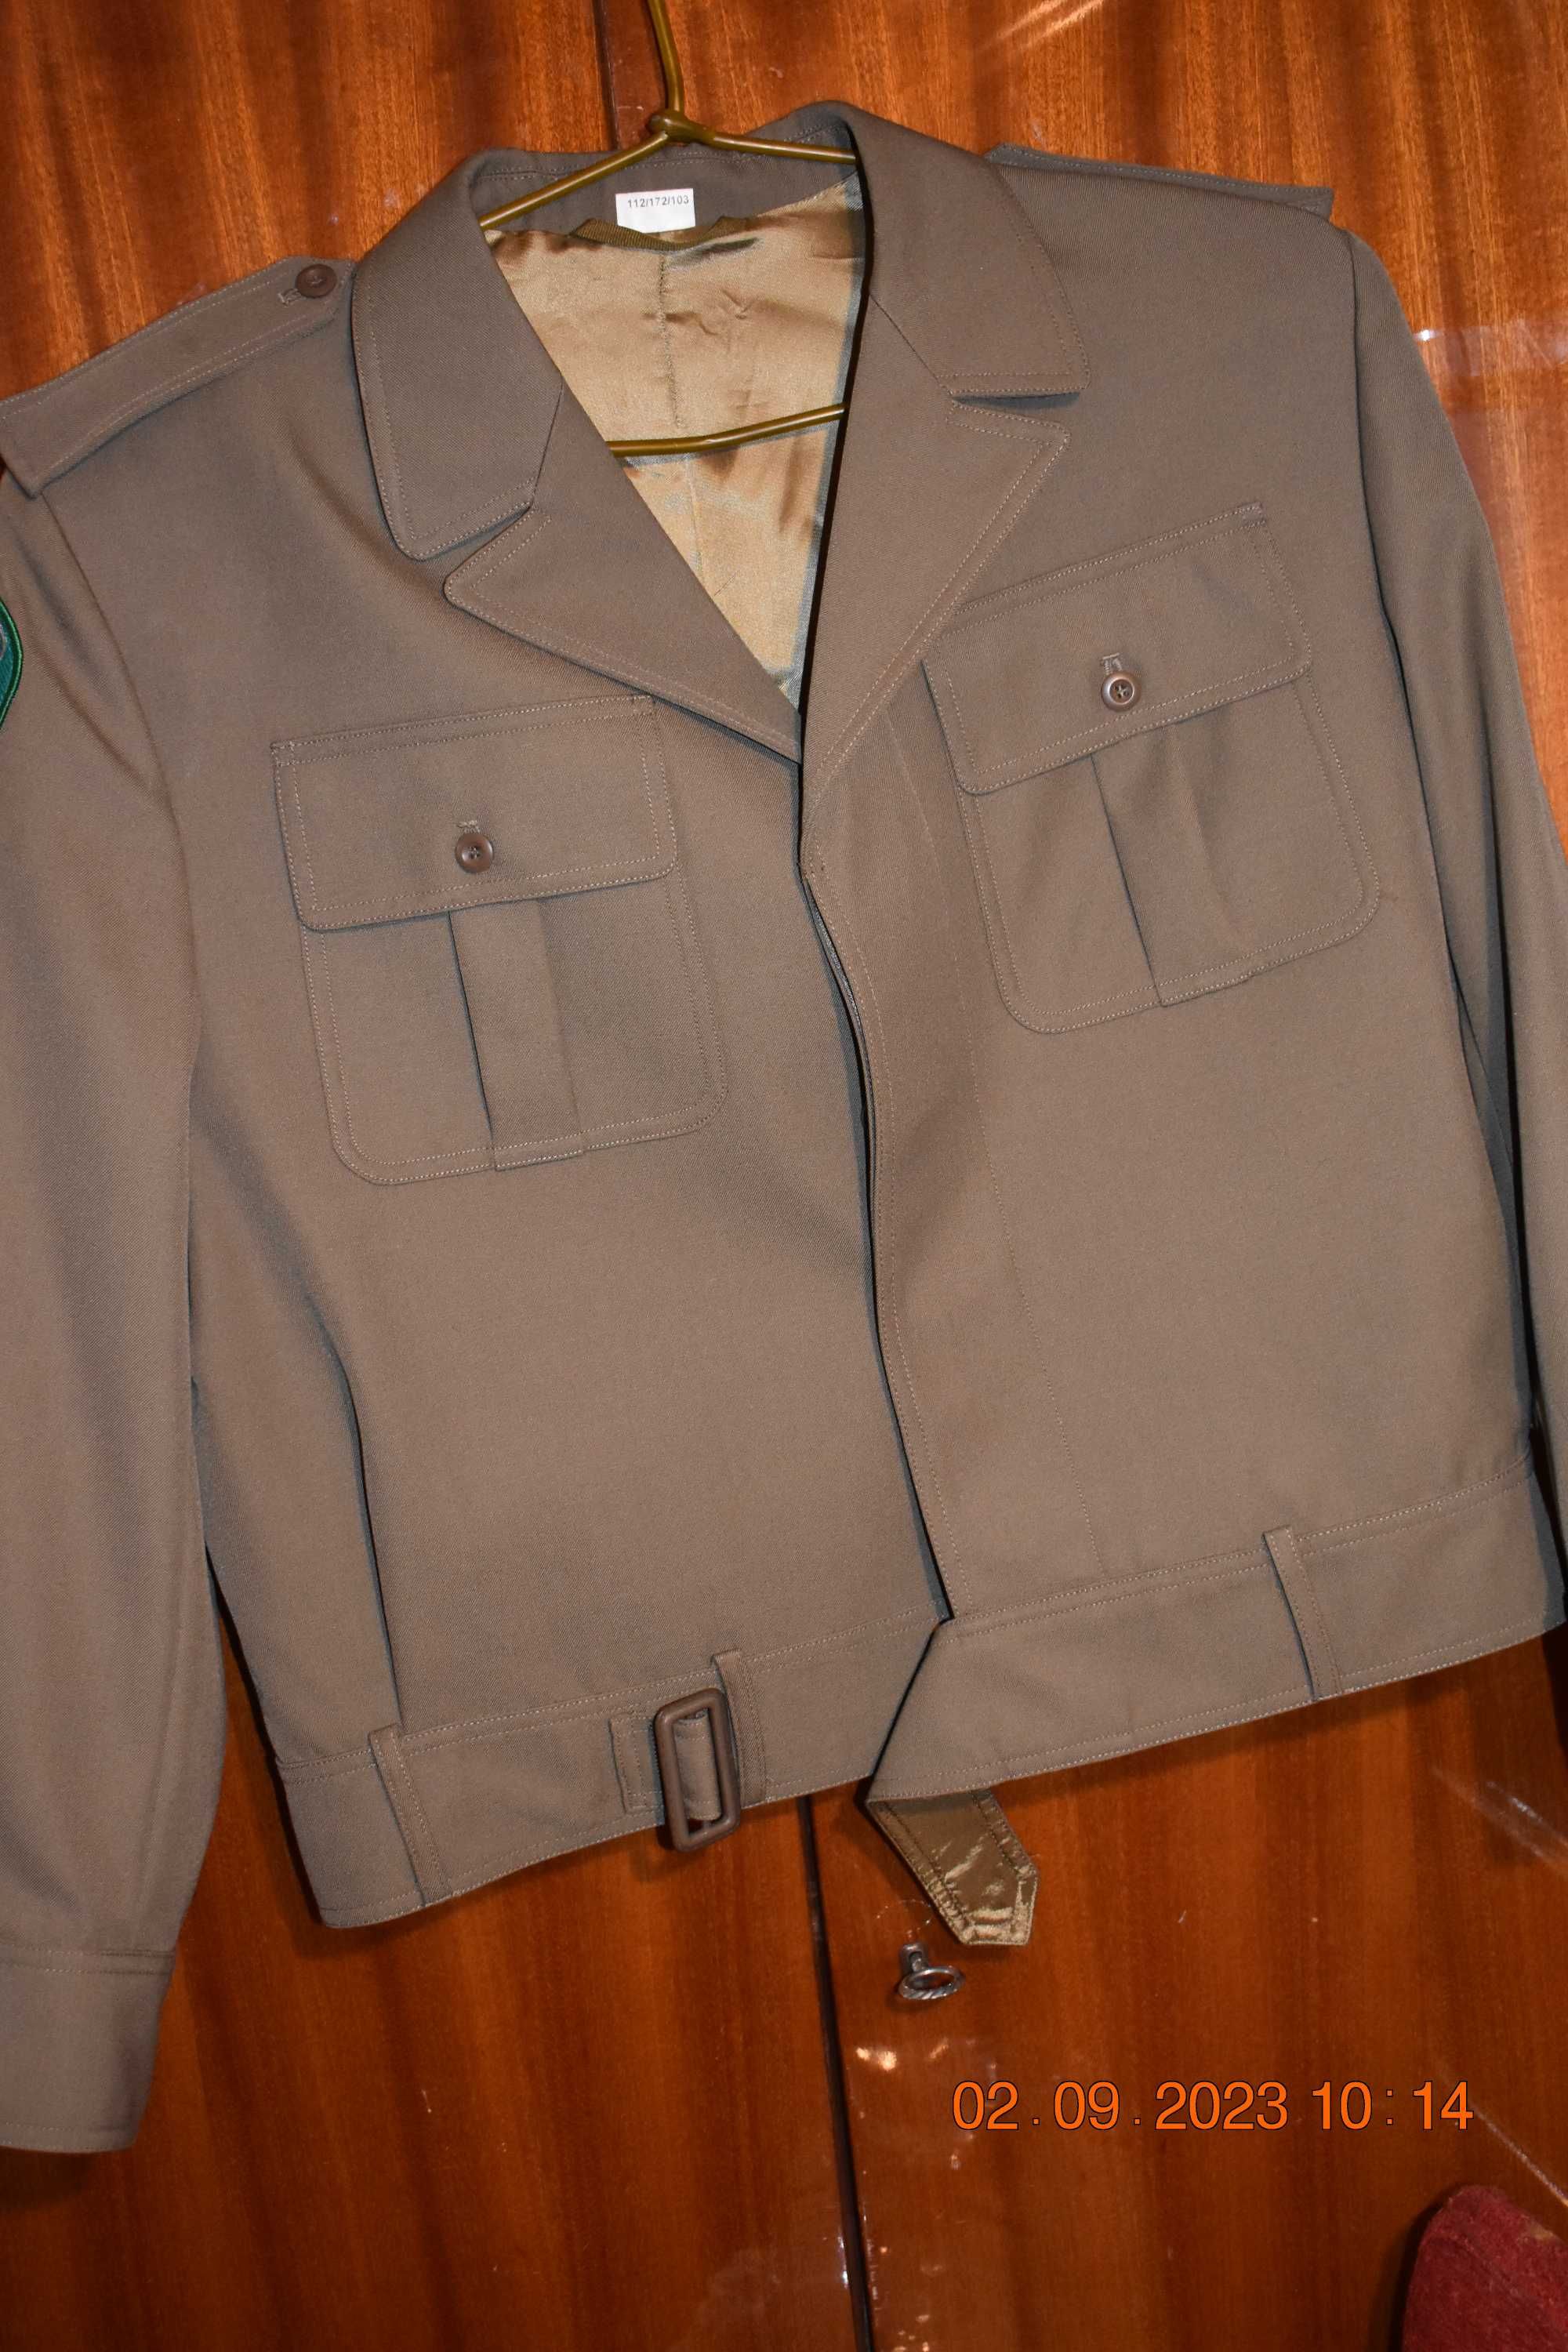 Bluza olimpijka z emblematem SG bez spodni/wojsk lądowych MON